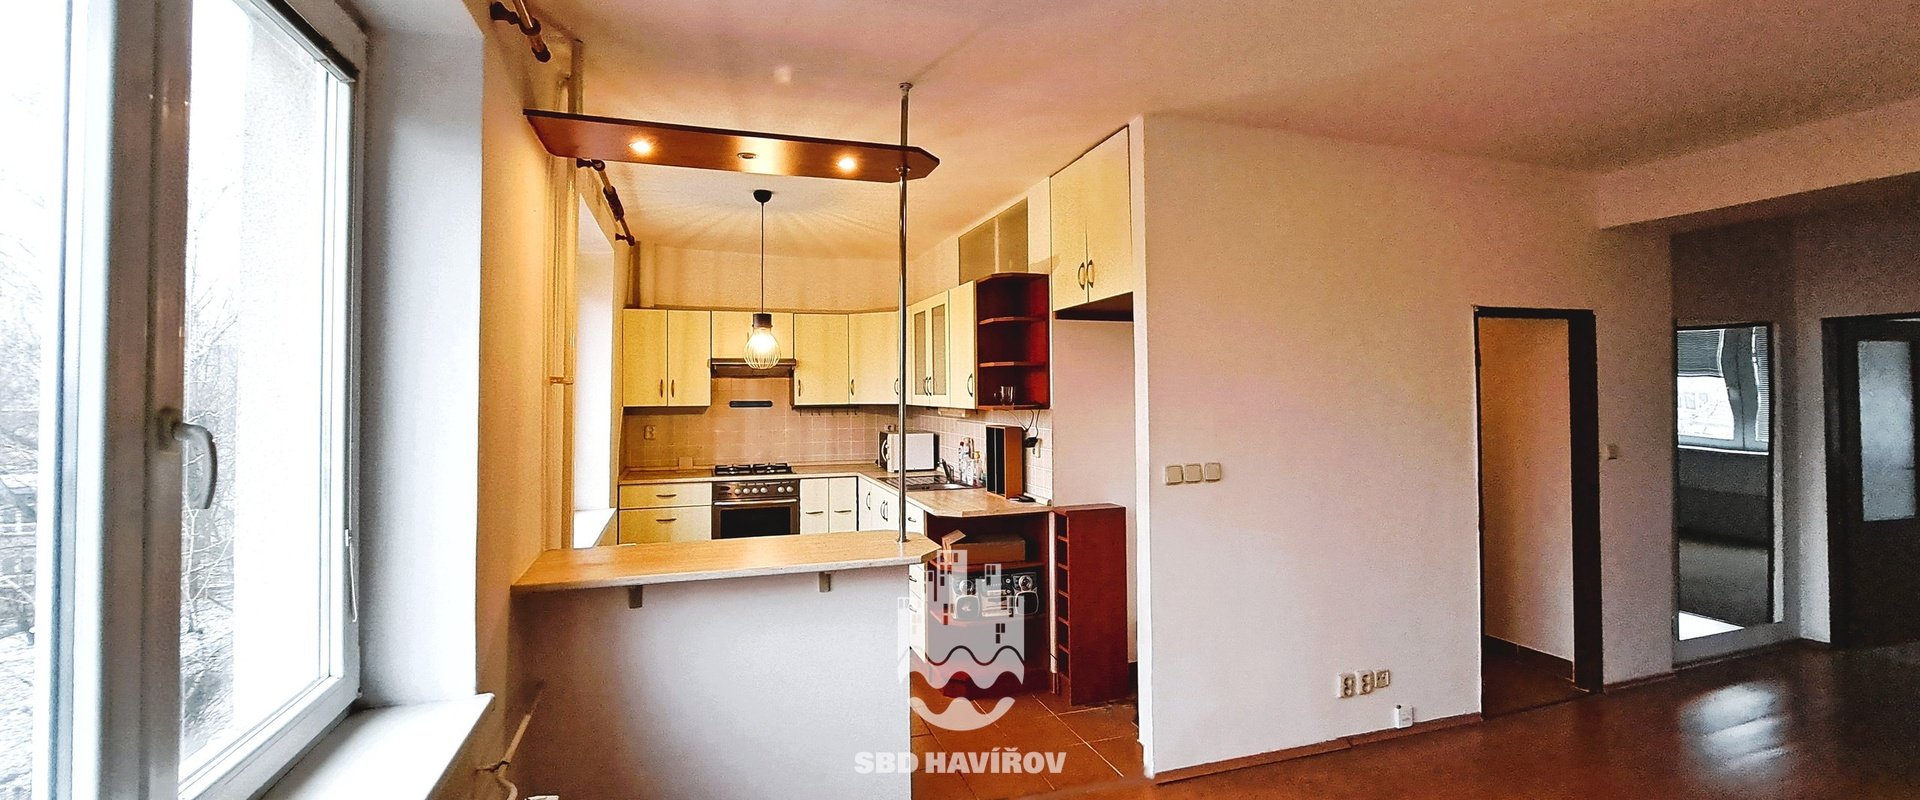 Obývací pokoj široký s kuchyní a zrcadlem